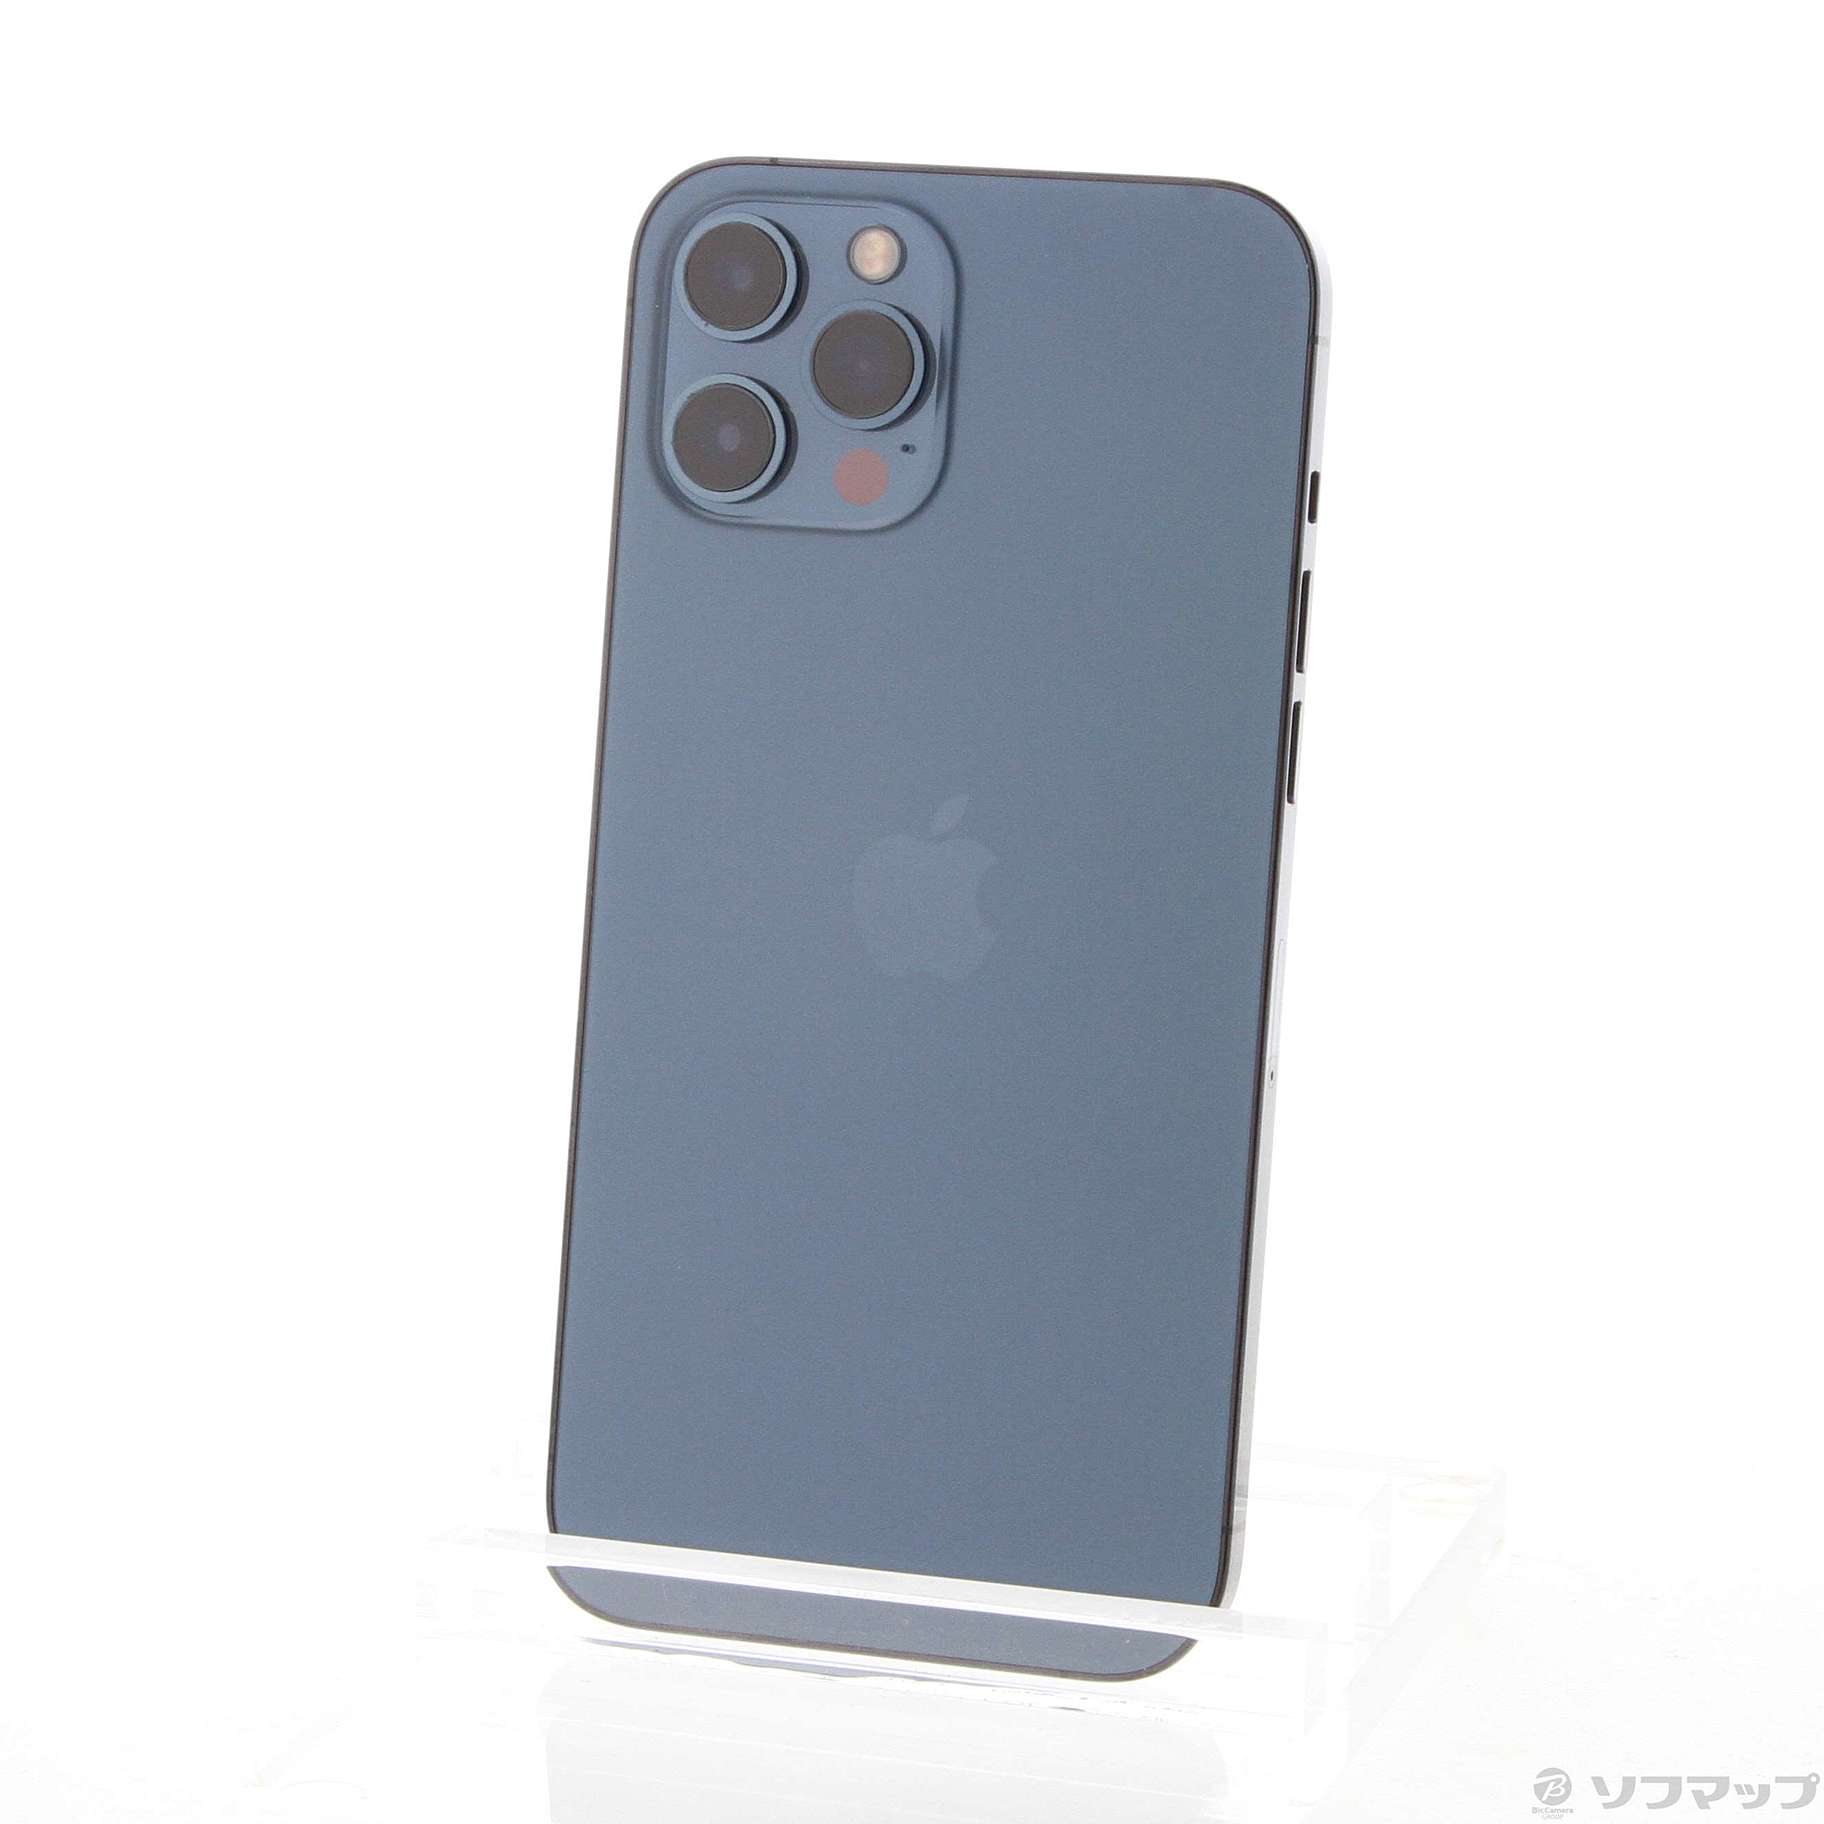 iPhone12 Pro Max 256GB パシフィックブルー